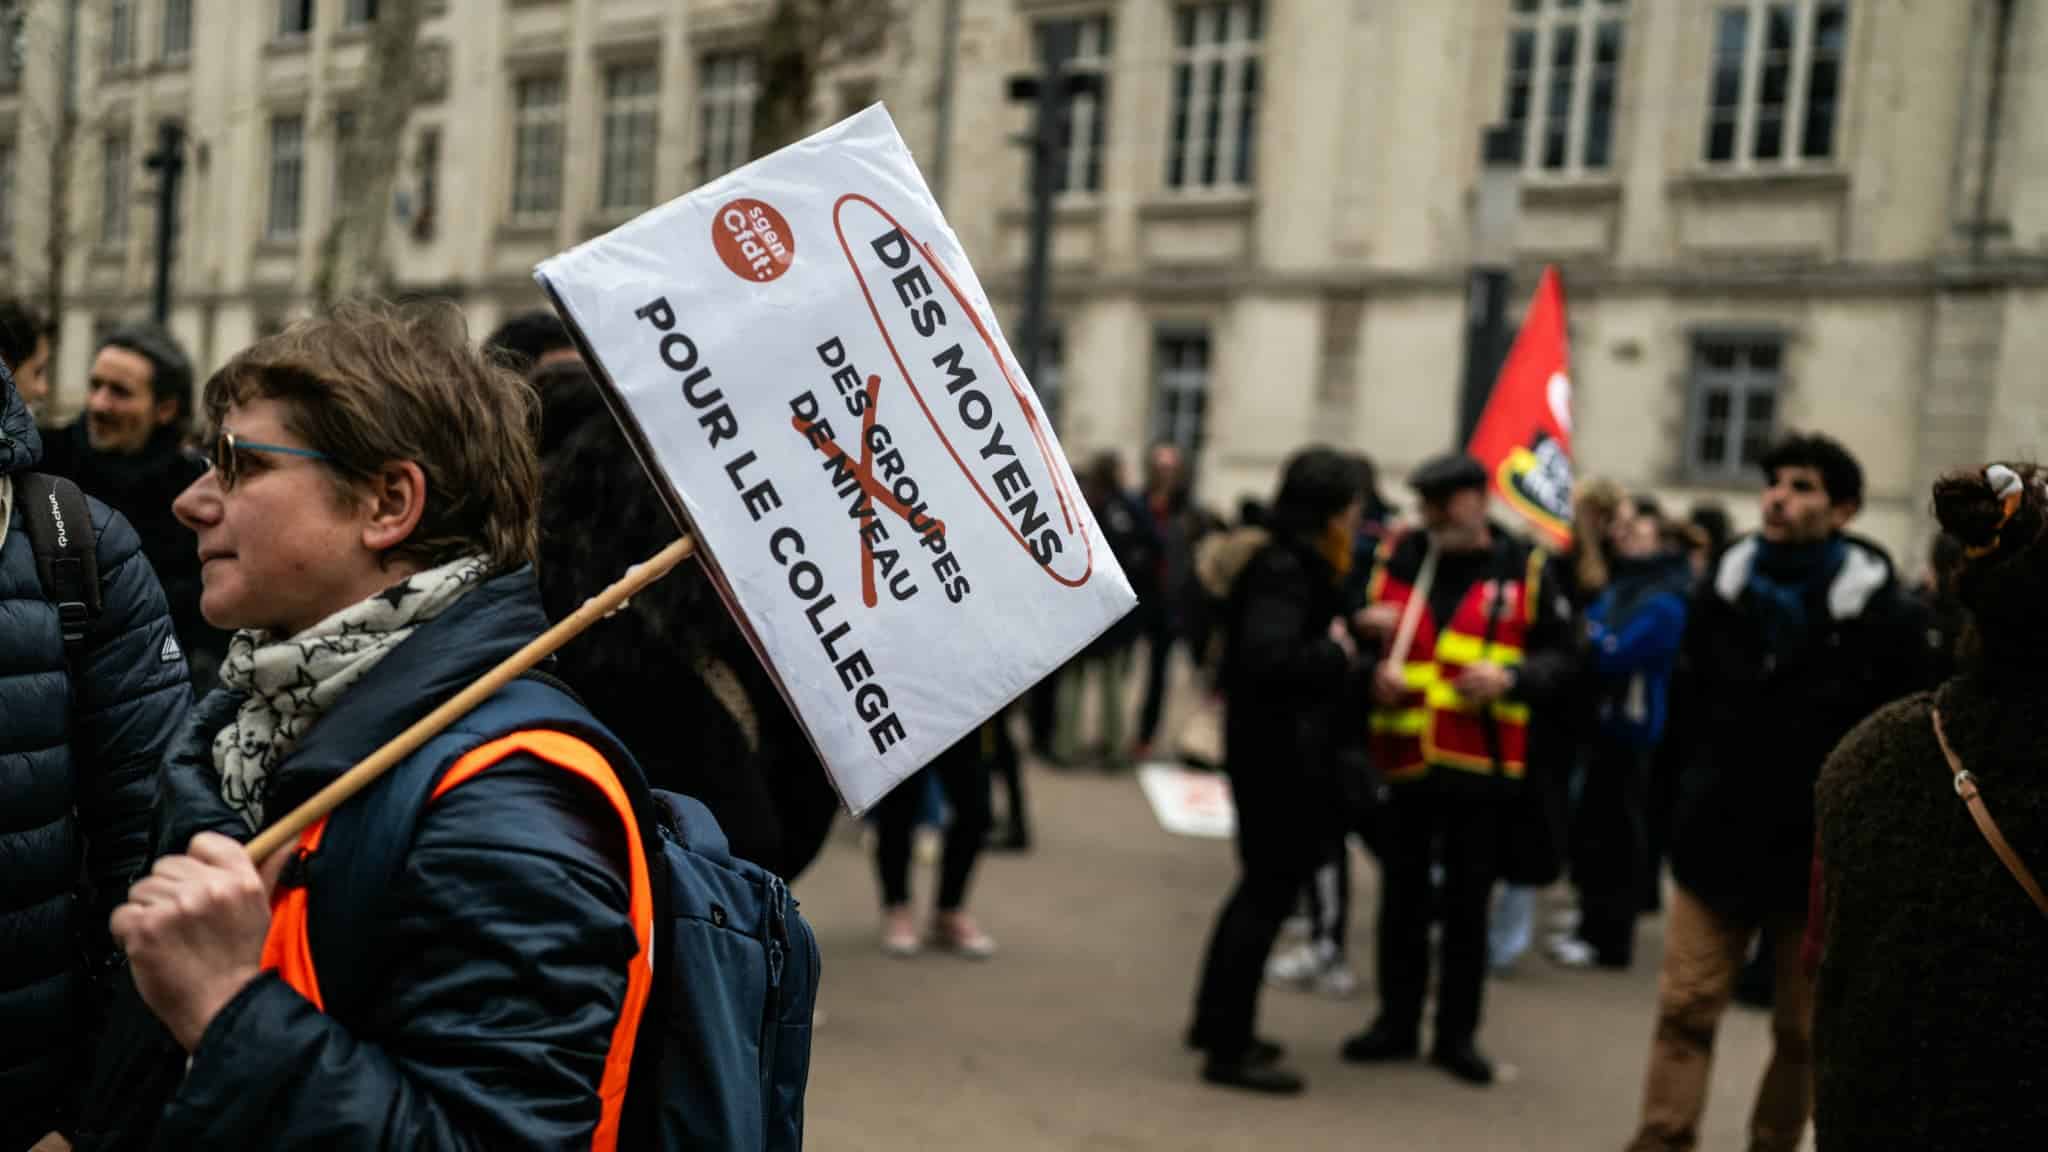 Réforme du collège: nouvelle mobilisation contre le "choc des savoirs" à l'appel de 8 syndicats d'enseignants